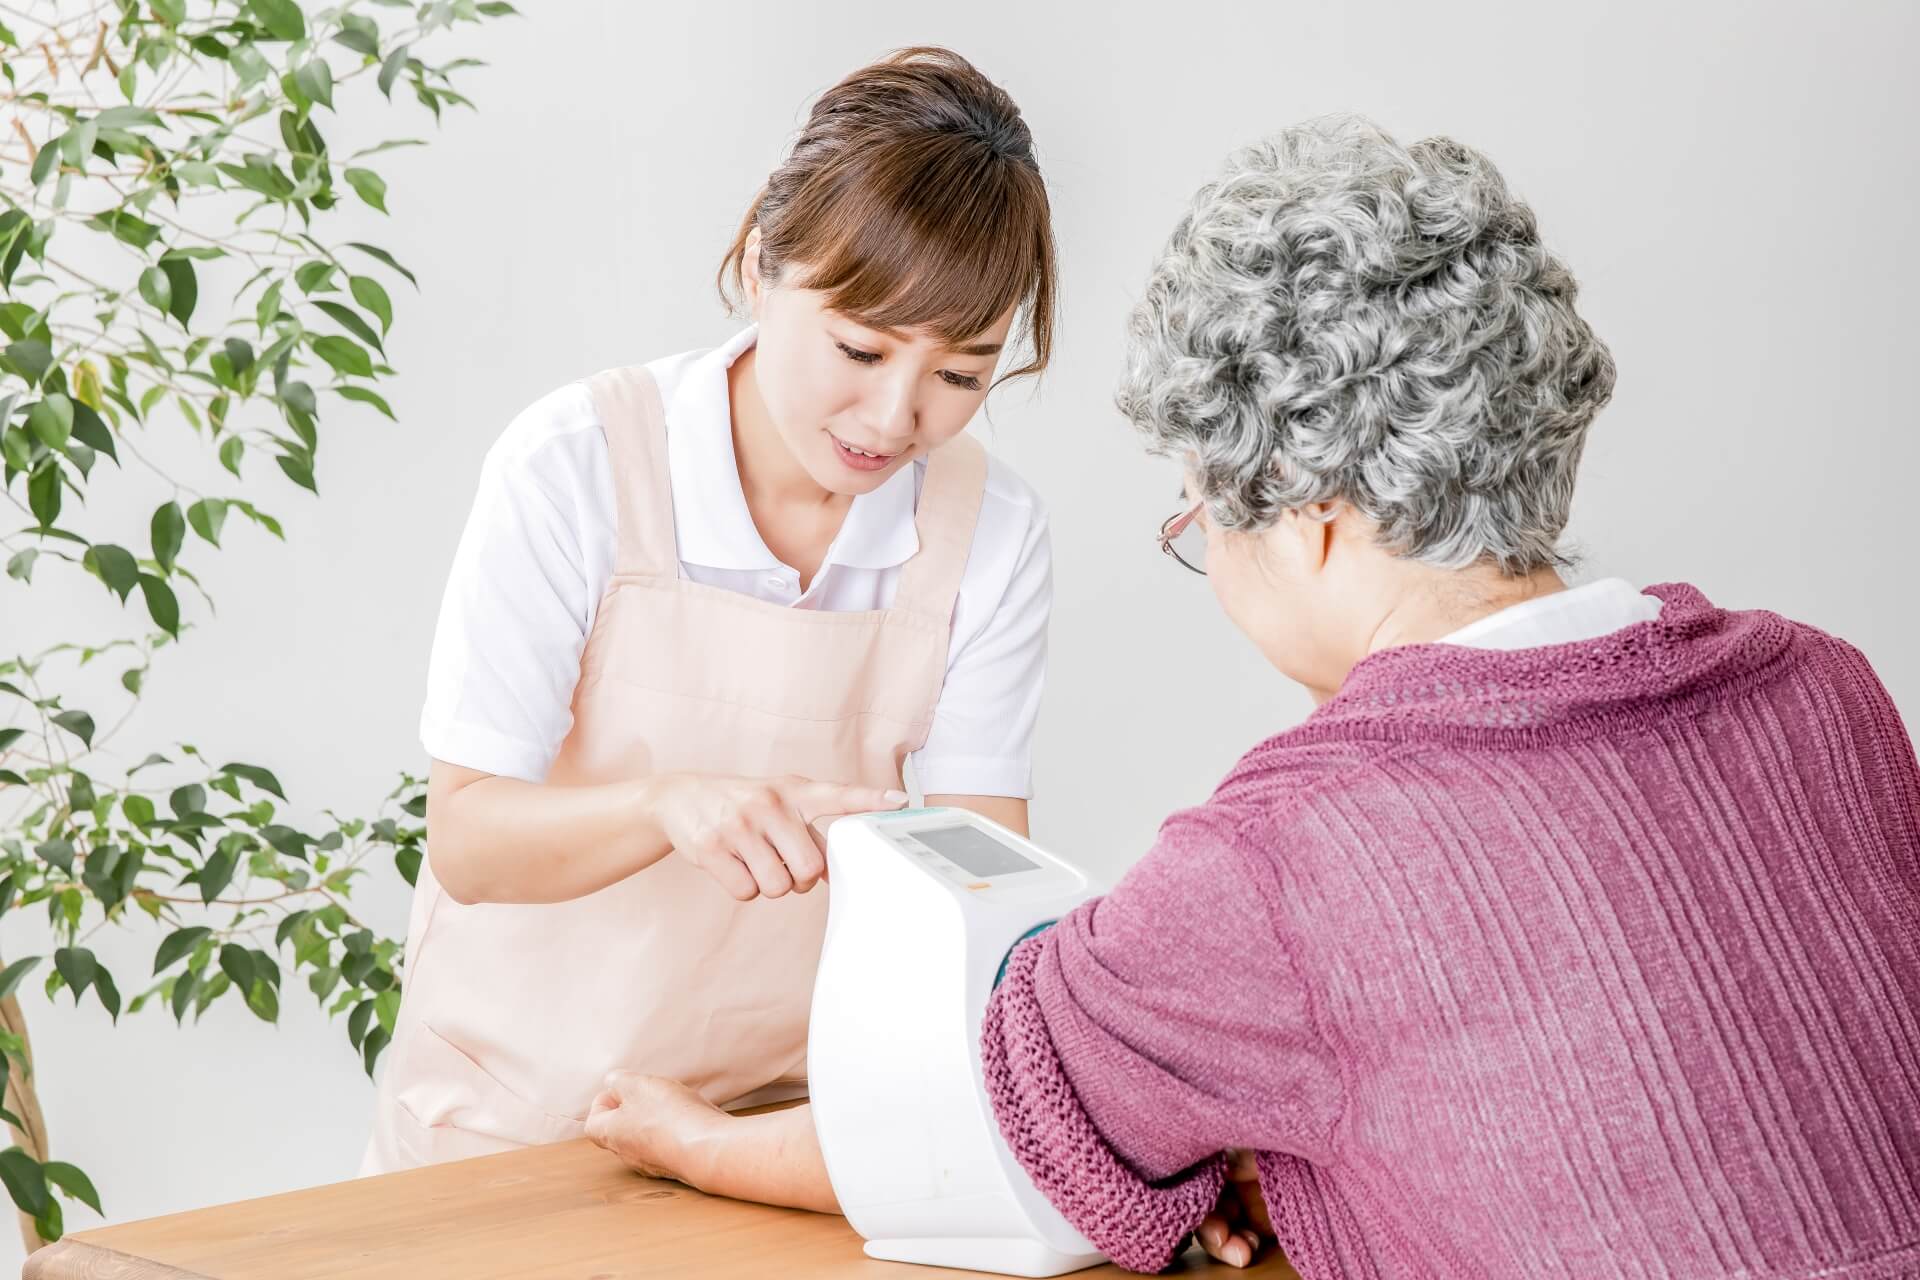 エプロンを身につけた明るい女性介護スタッフが、ご高齢女性の血圧を測定している写真